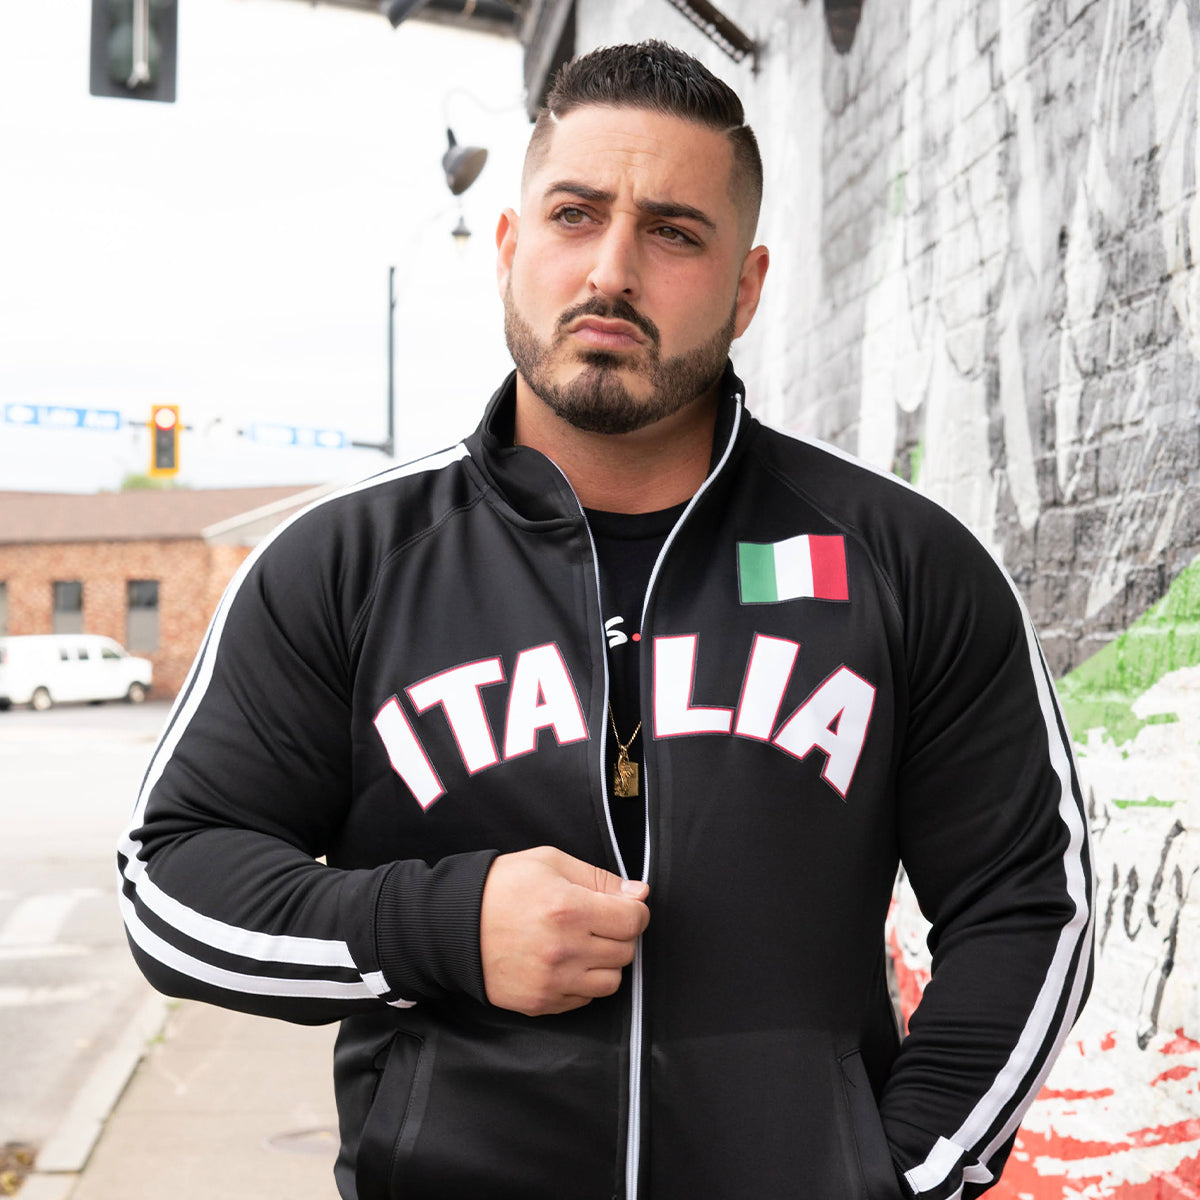 Italia track jacket